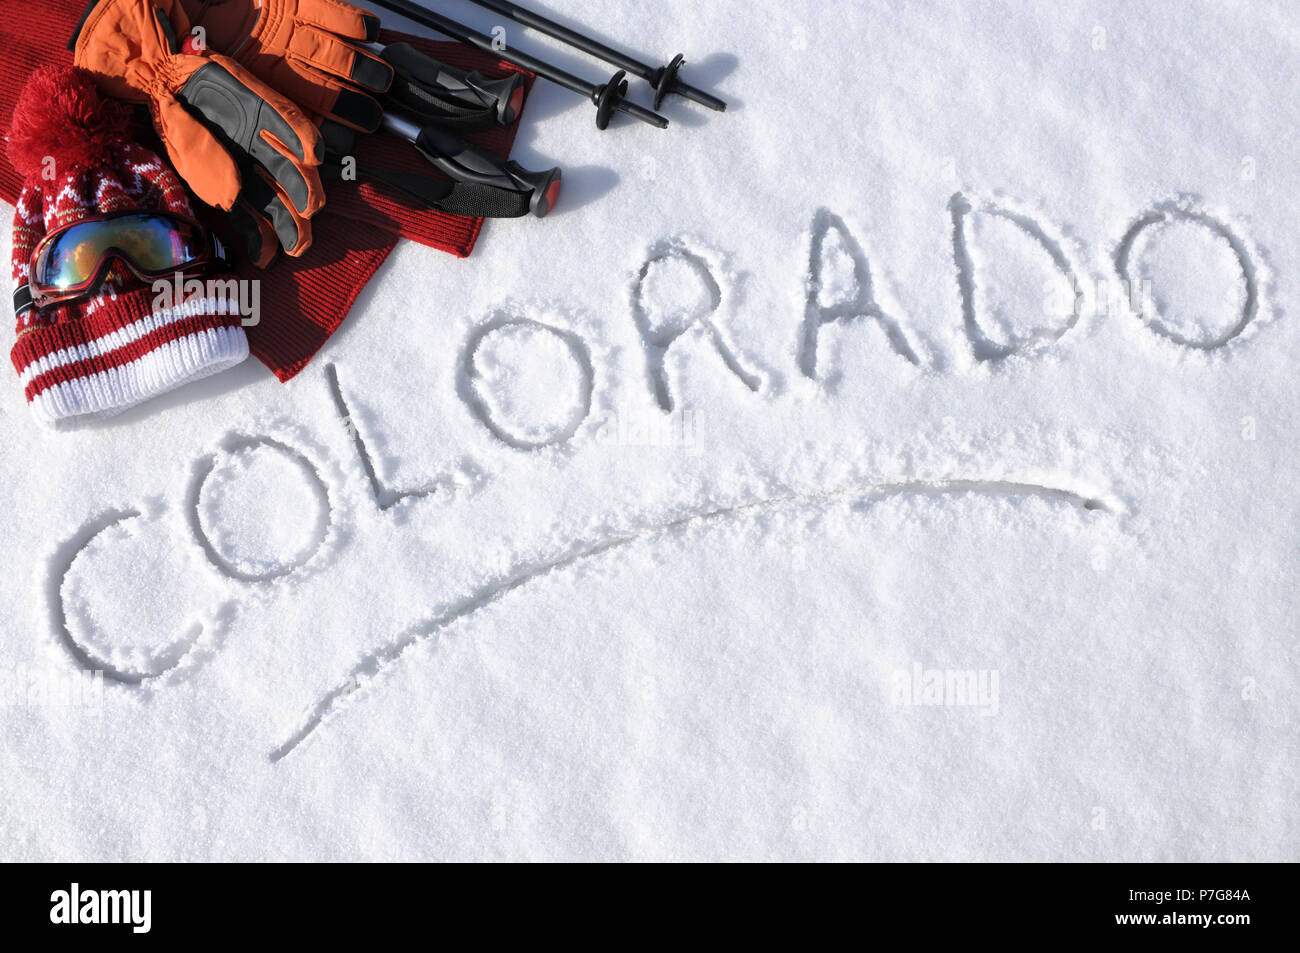 Das Wort Colorado im Schnee mit Ski Stöcke, Schutzbrille und Hüte geschrieben. Stockfoto